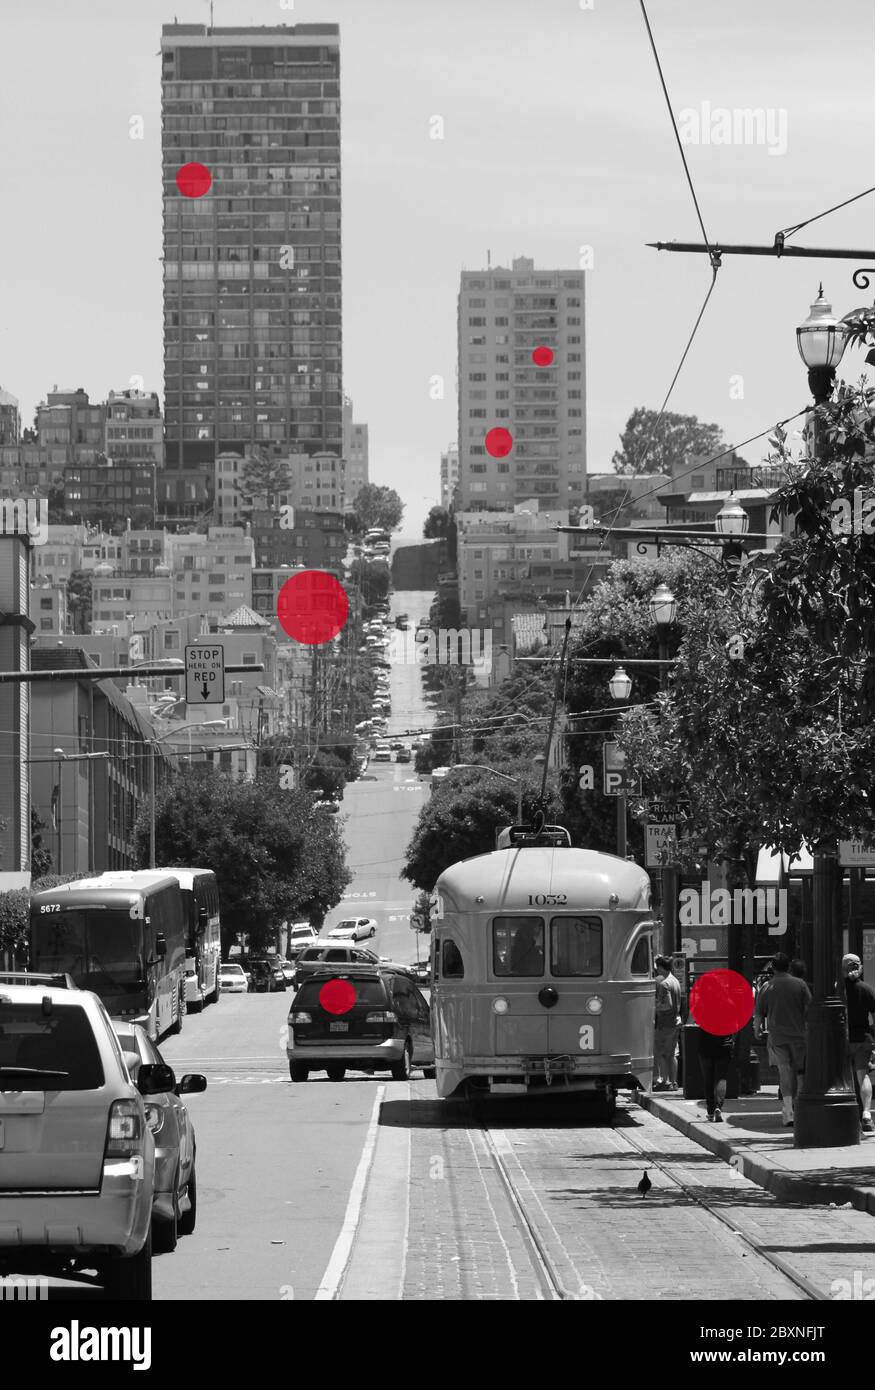 San Francisco, USA - 12. Februar 2020: Eine geschäftige Straße in der Innenstadt von San Francisco mit roten Kreisen, die eine ansteckende Person symbolisieren. Stockfoto